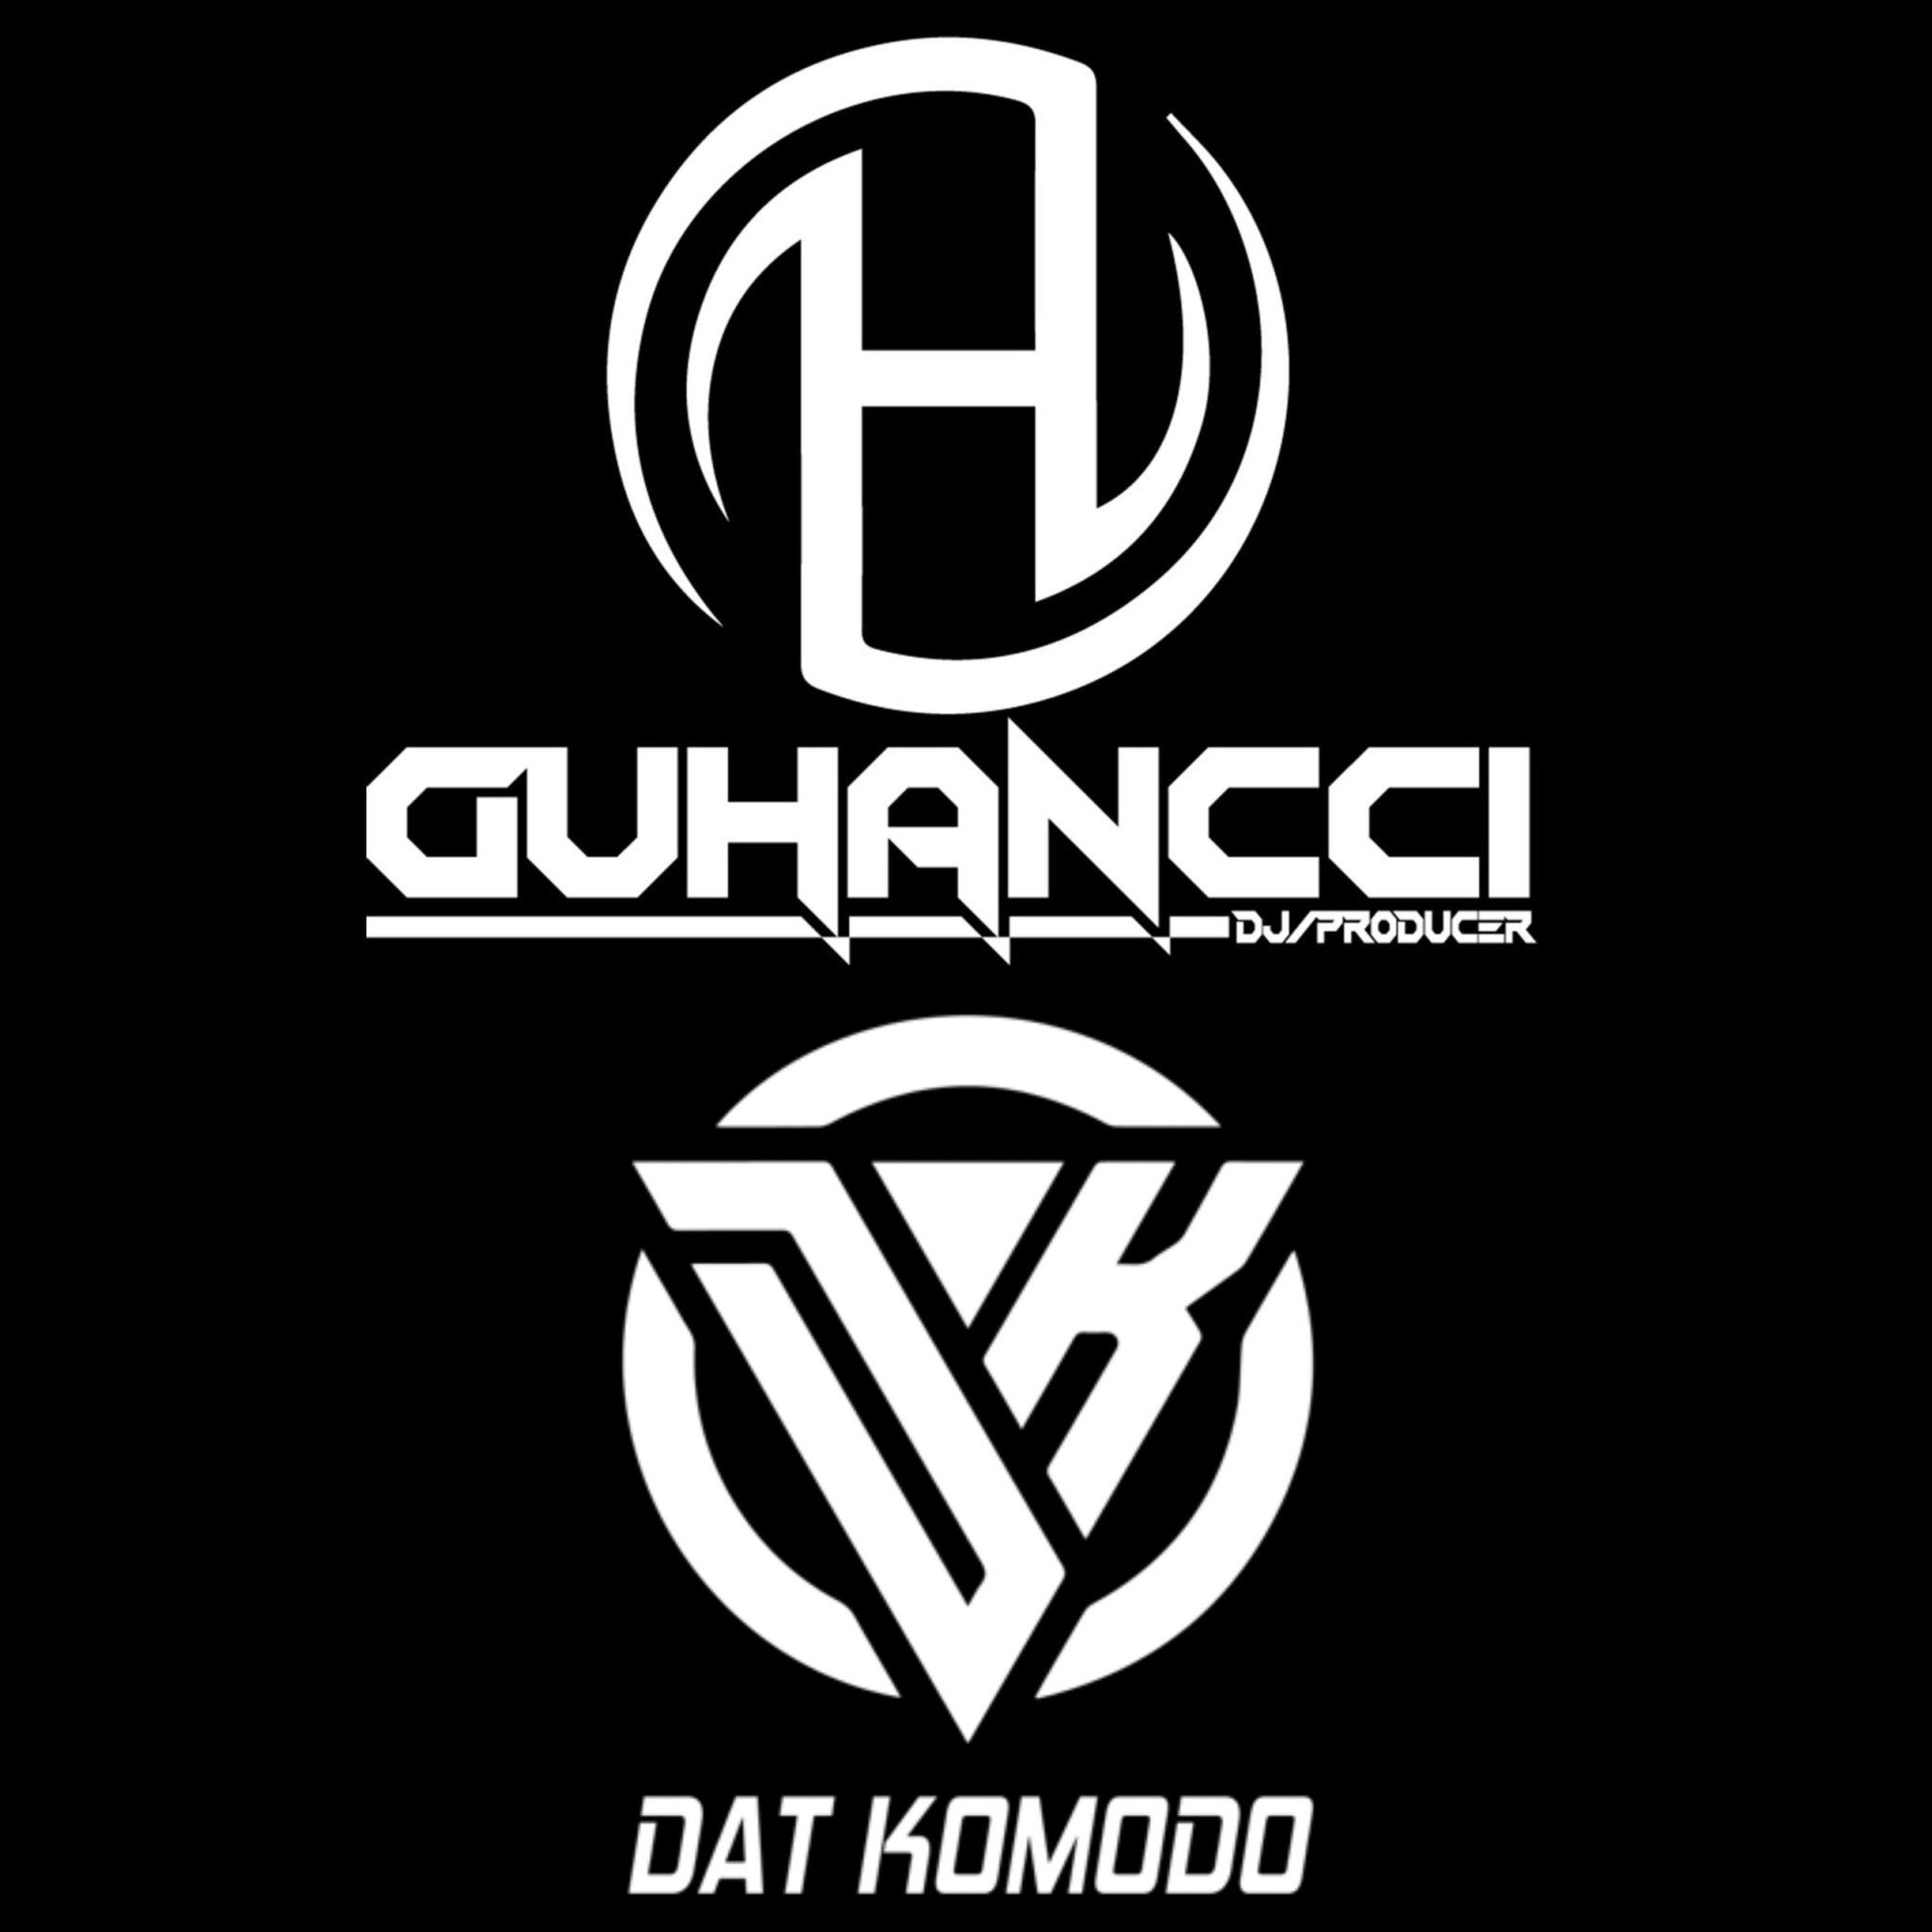 I-download Express Music - DatKomodo ft guHancci (guHancci Team)